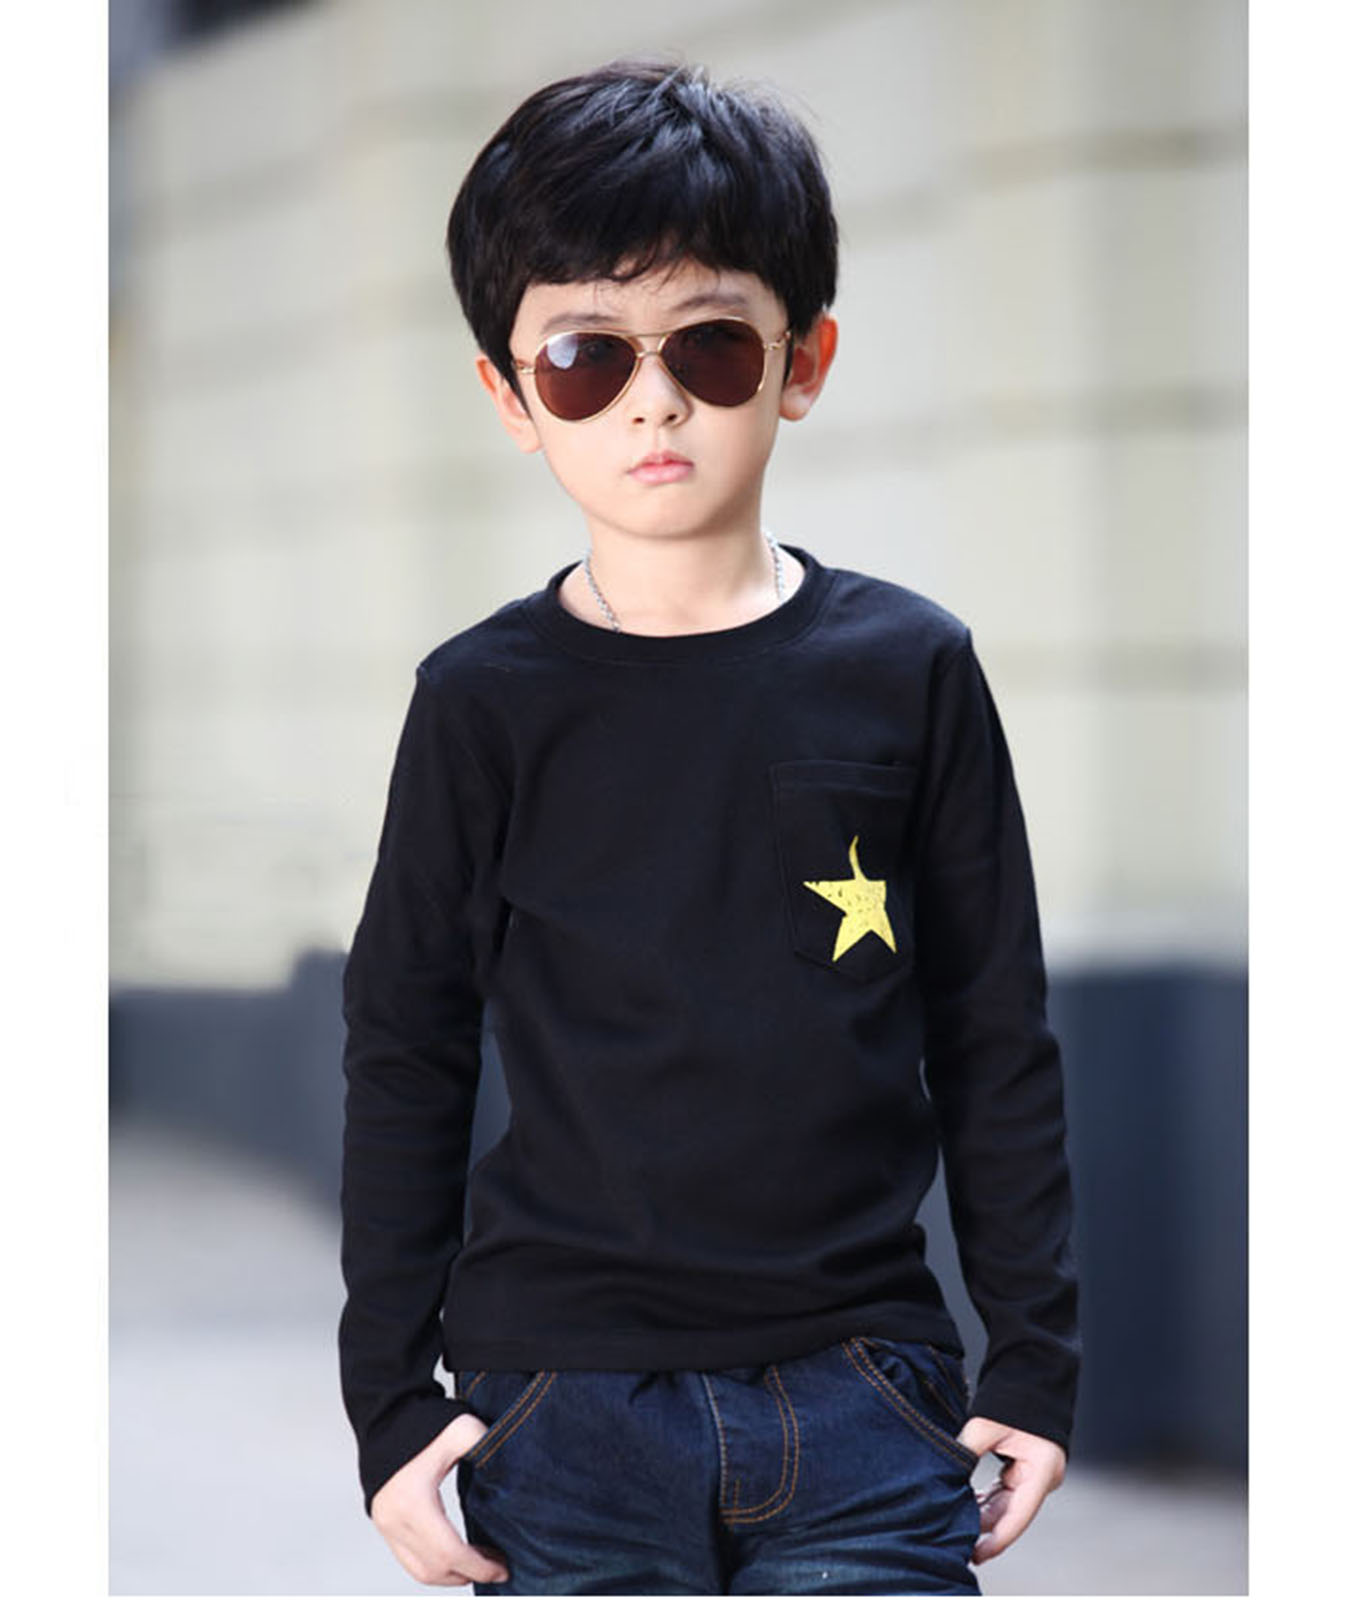 Stylish Little Boy Wallpaper - Full Hd Smart Boy , HD Wallpaper & Backgrounds